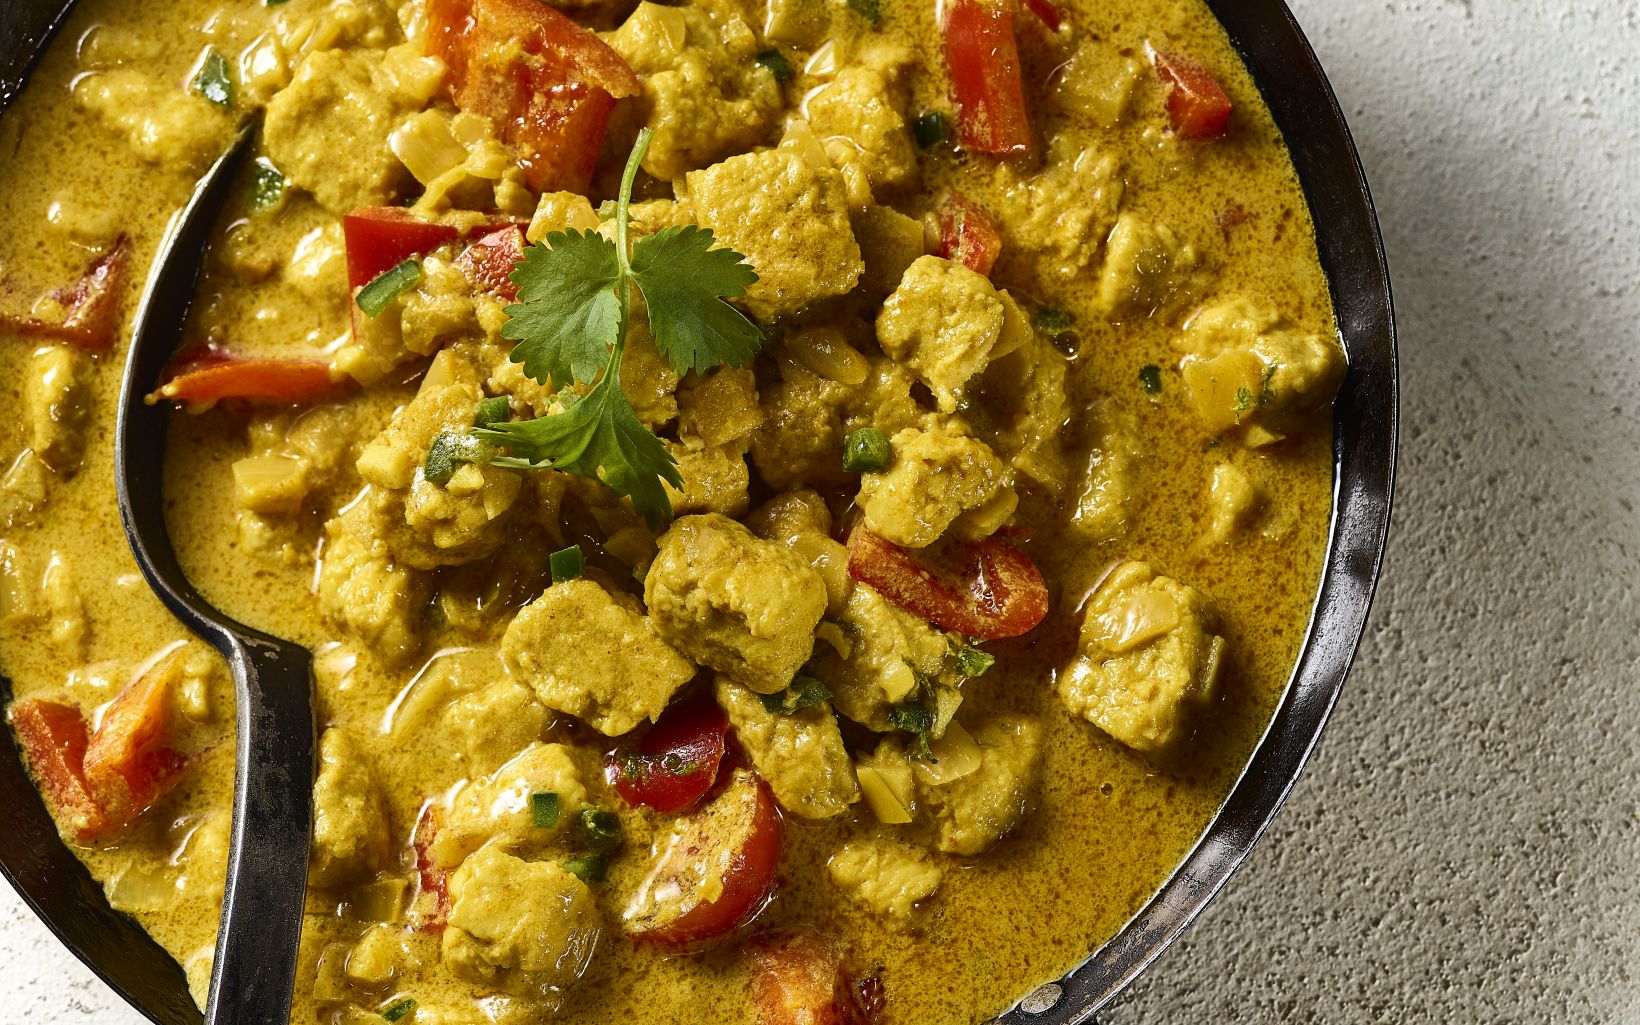 47328 Brazilian Curry Pieces Recipe Image 2018 4 